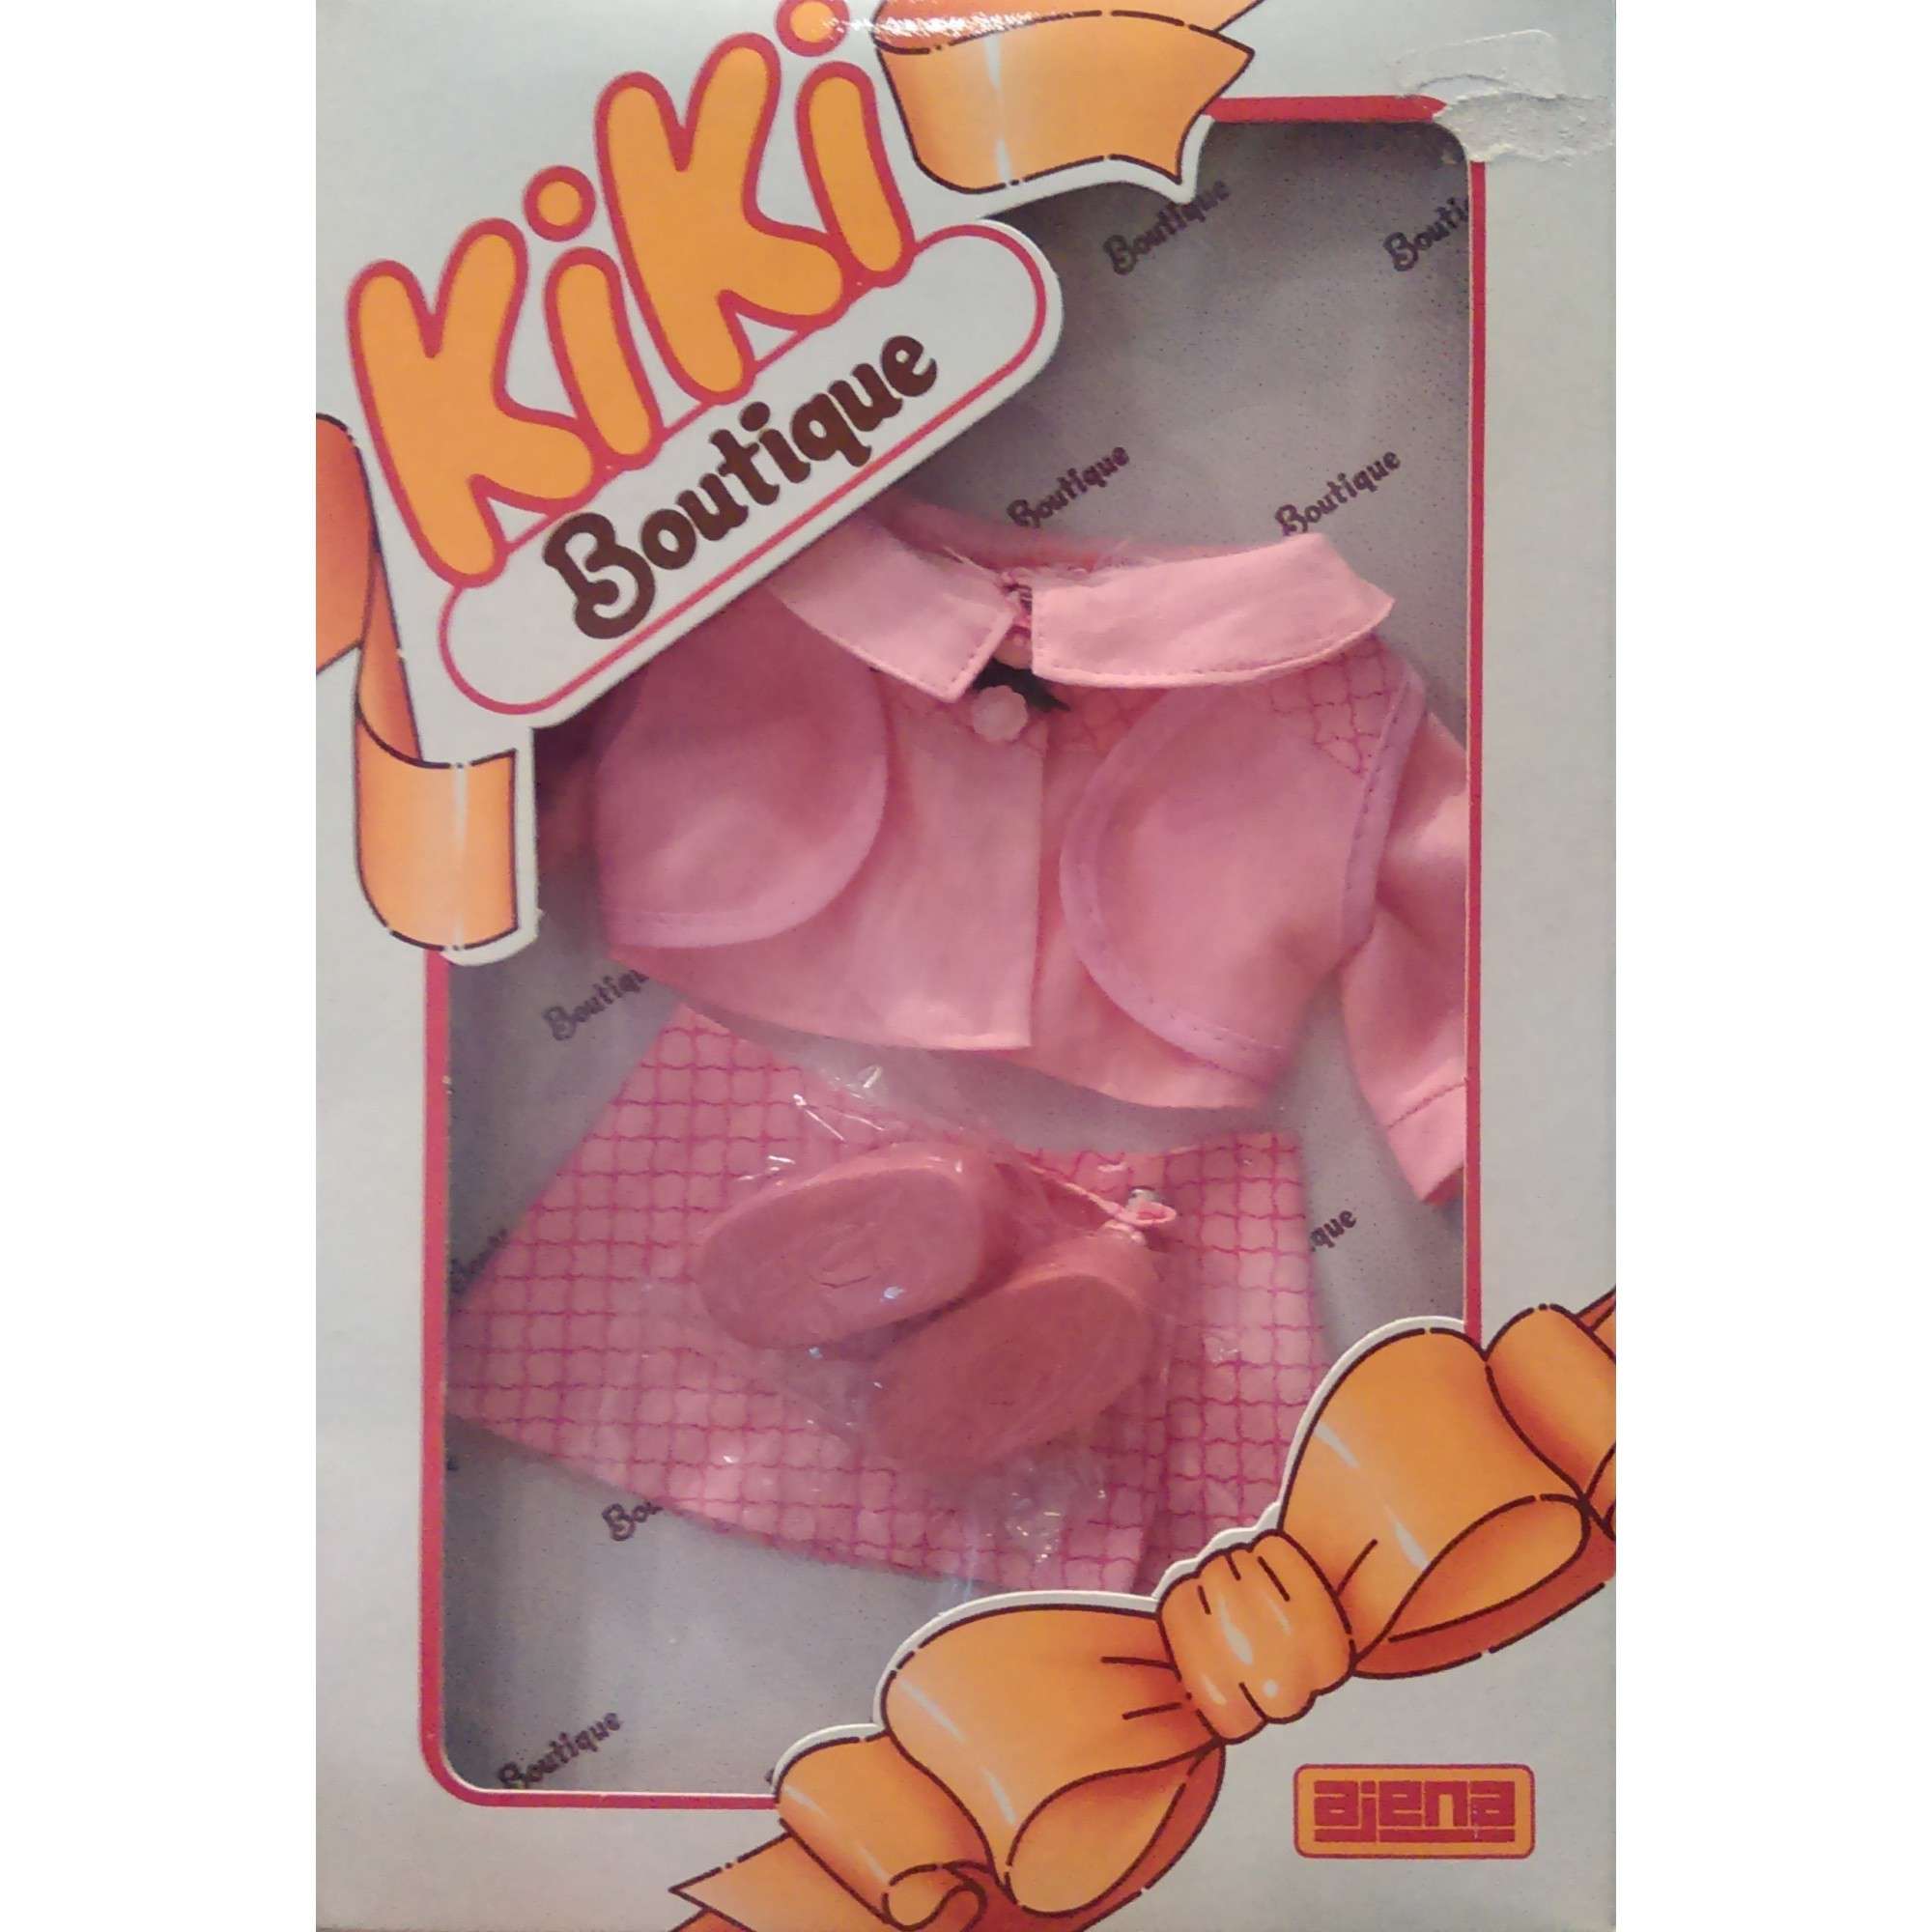 Vêtements Kiki et accessoires Kiki - Kikishop